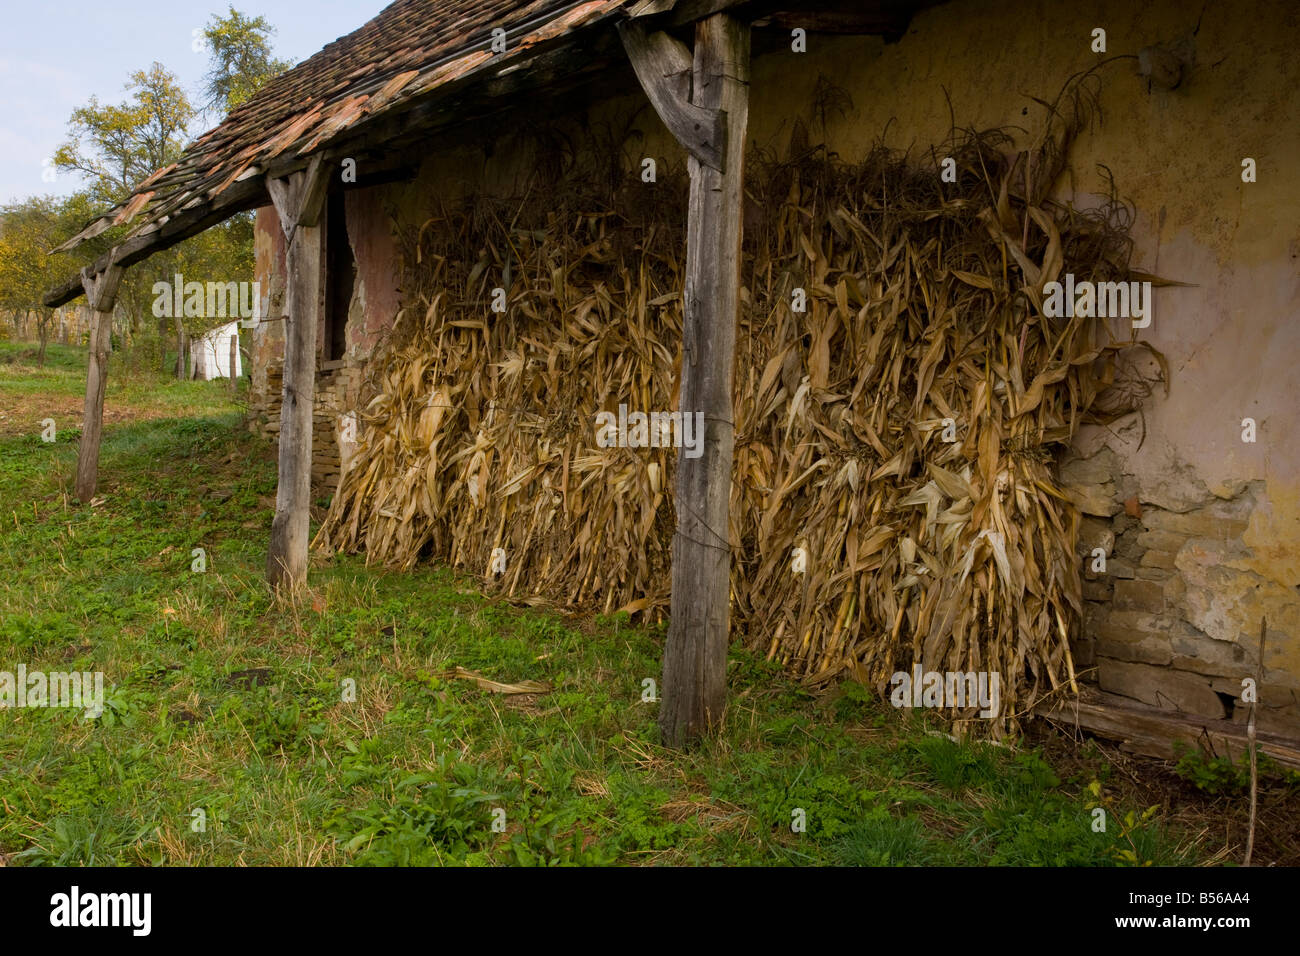 Maize drying in Mesendorf or Meschendorf saxon villages Transylvania Romania Stock Photo